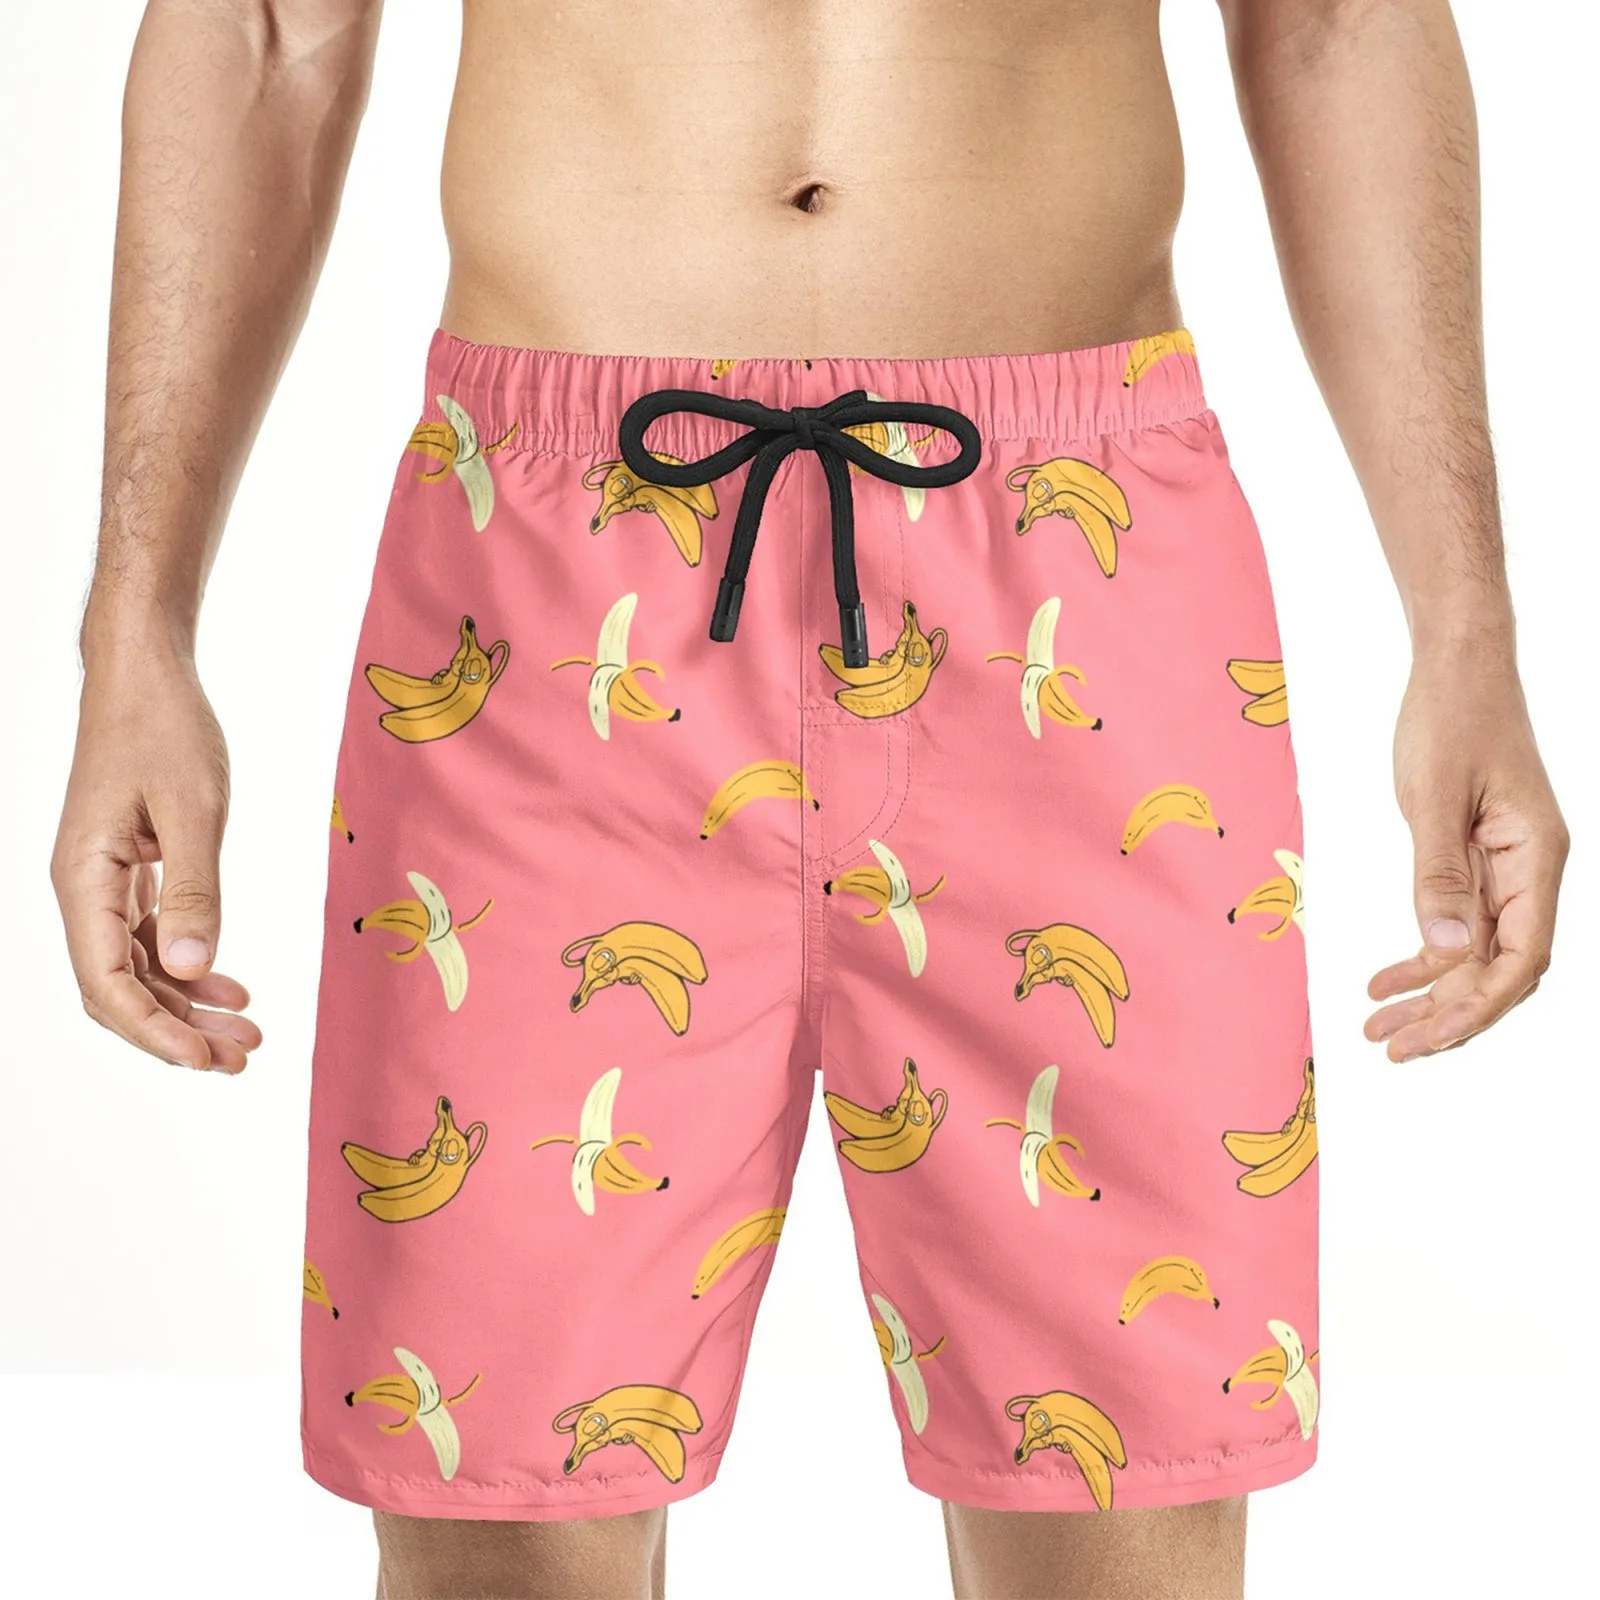 

Men Loose Pants Short Summer Casual Shorts Quick-drying Surf Swim Beach Shorts Board Shorts Pants Jogger Sweatpants Hawaii Style